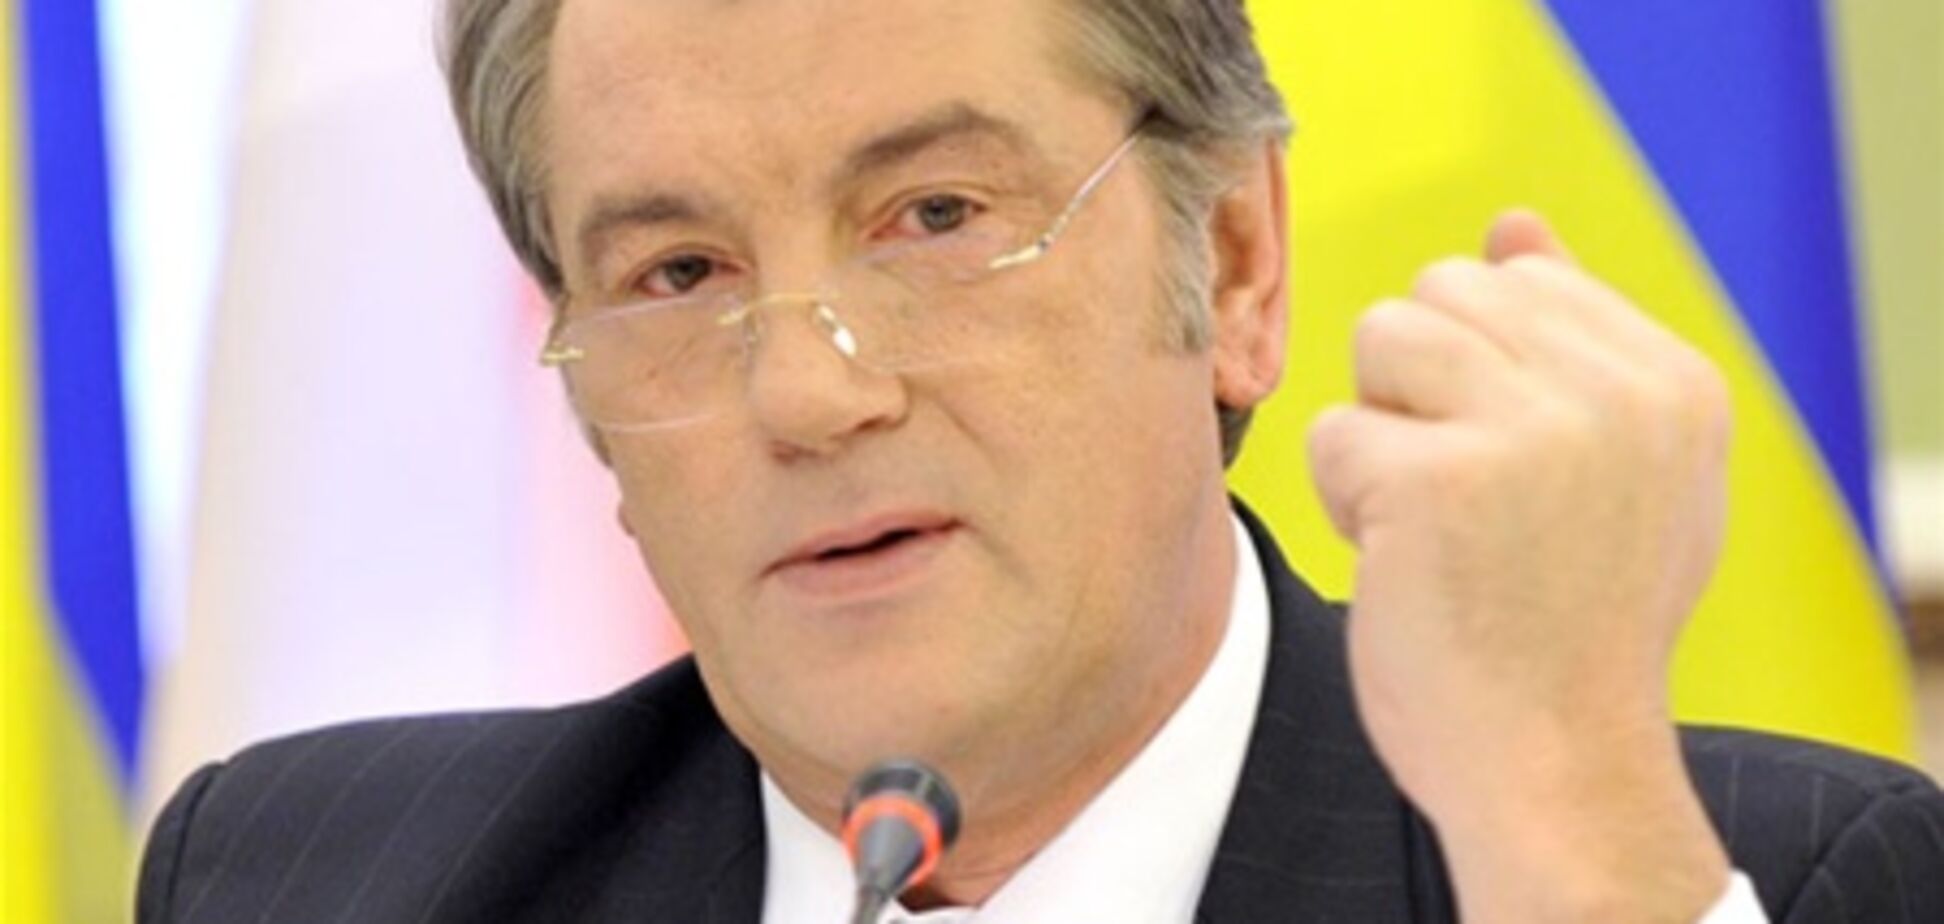 Иск против Ющенко: чтобы его посадить, понадобится импичмент